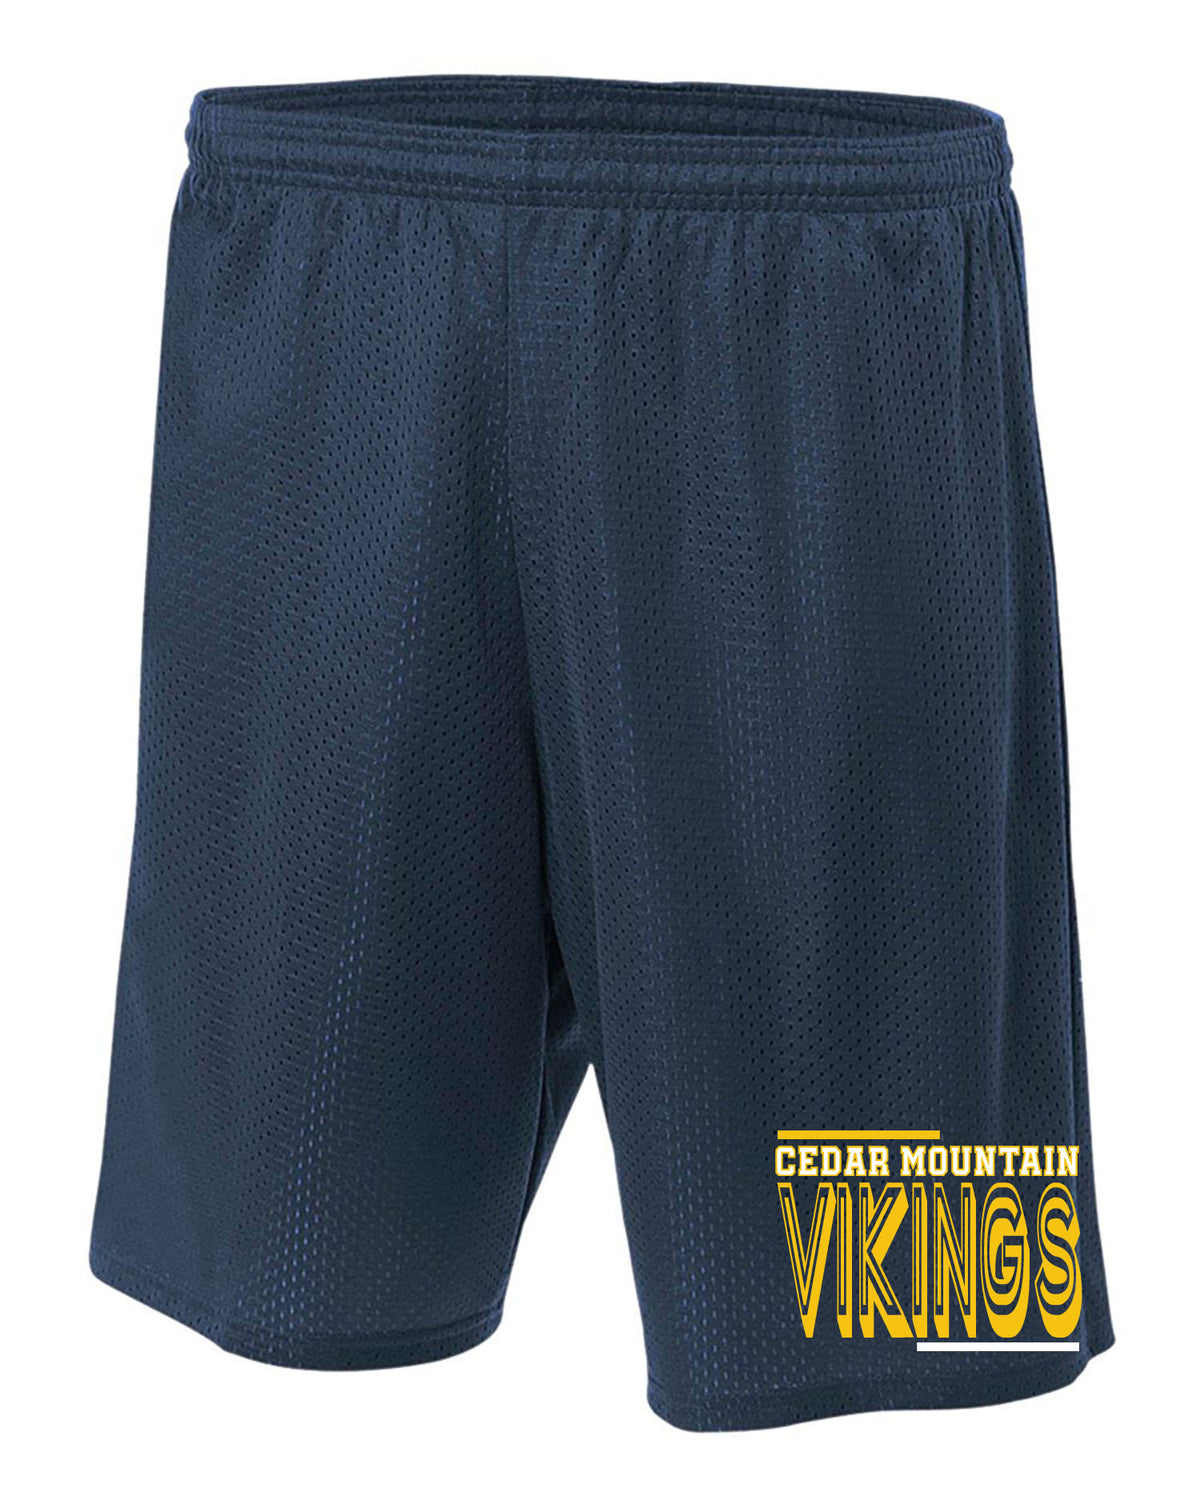 Cedar Mountain Design 2 Mesh Shorts